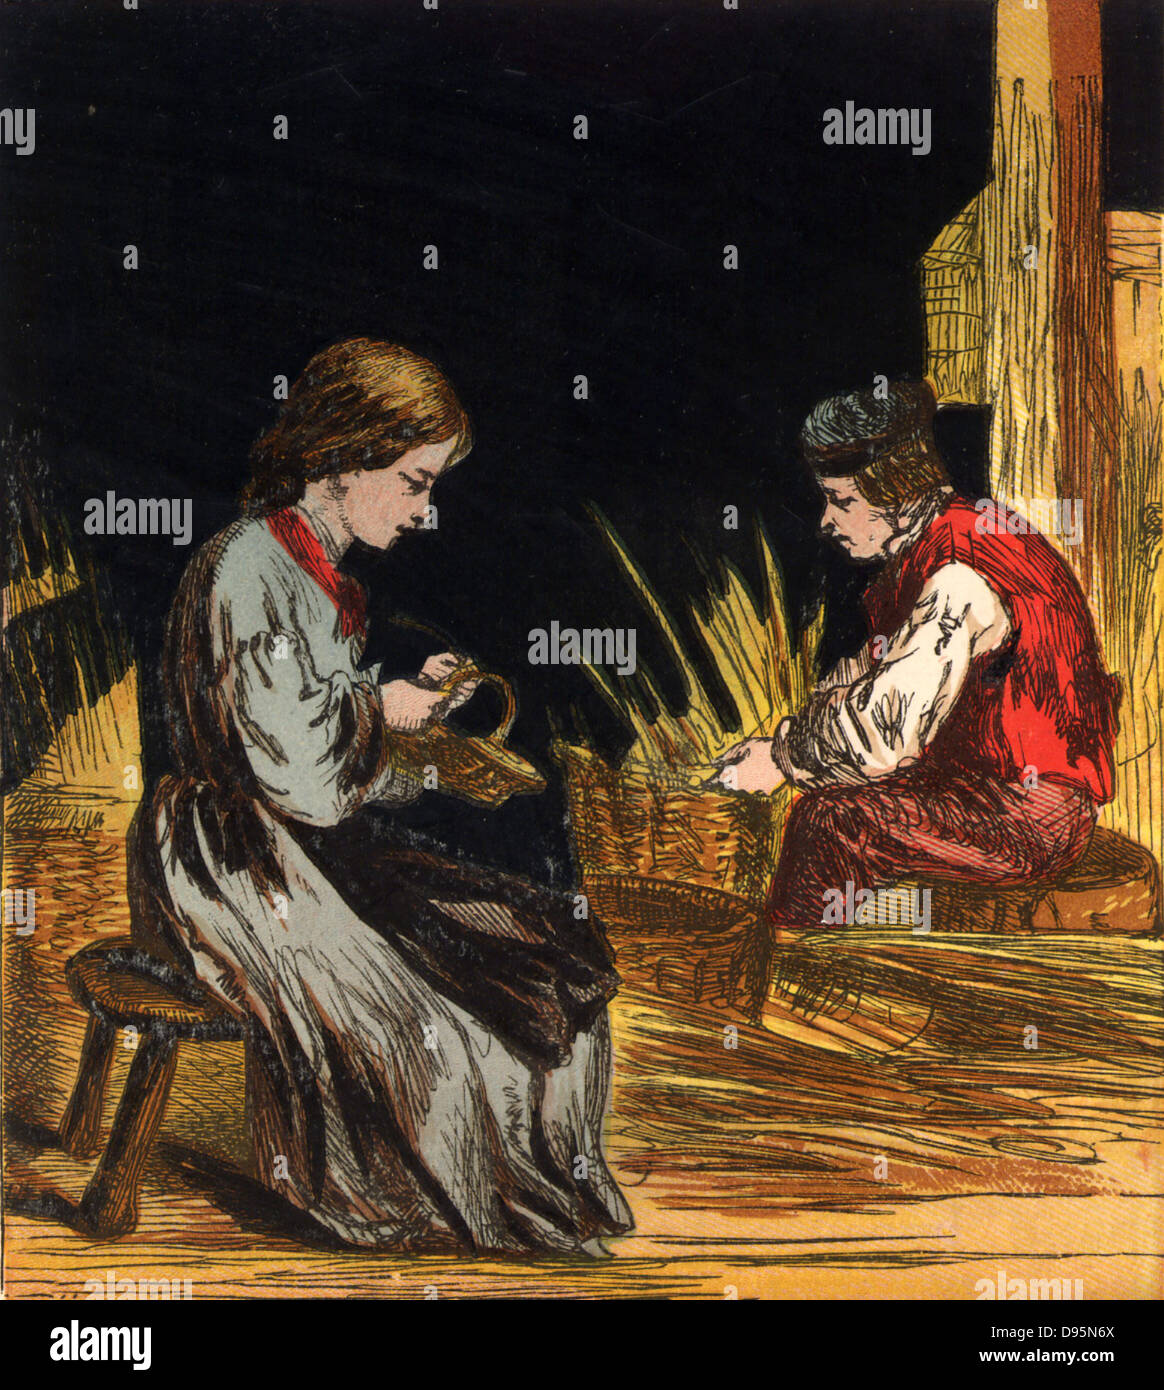 Blind Korbmacher und seine Tochter. Warenkorb war einer der traditionellen Handwerk für Menschen ohne Sicht. Chromolithograph aus einem Kinderbuch veröffentlicht London, 1867. Stockfoto